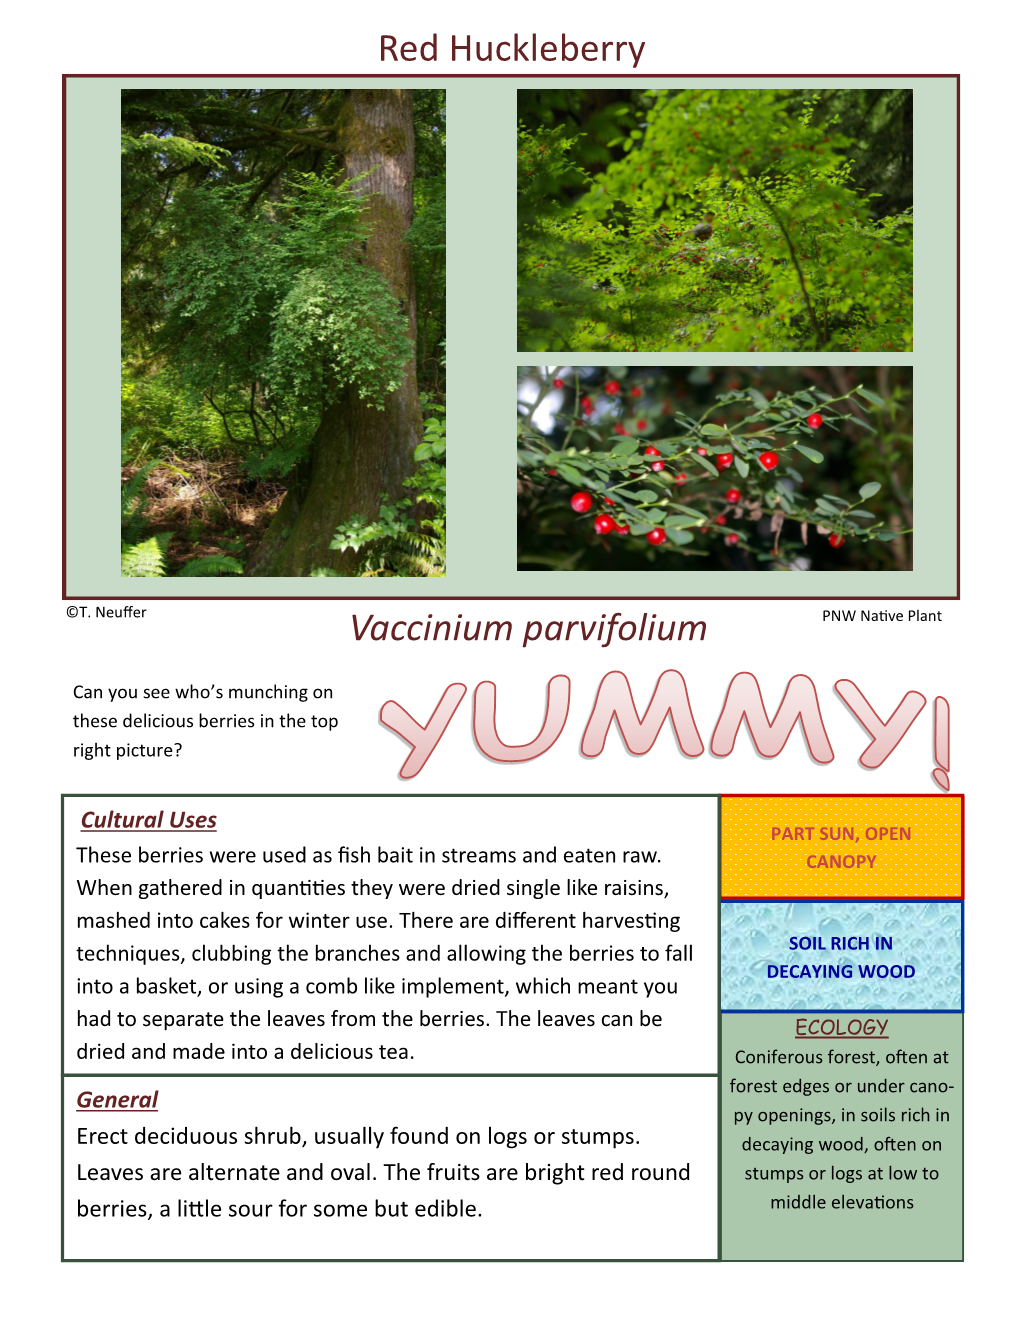 Red Huckleberry Vaccinium Parvifolium